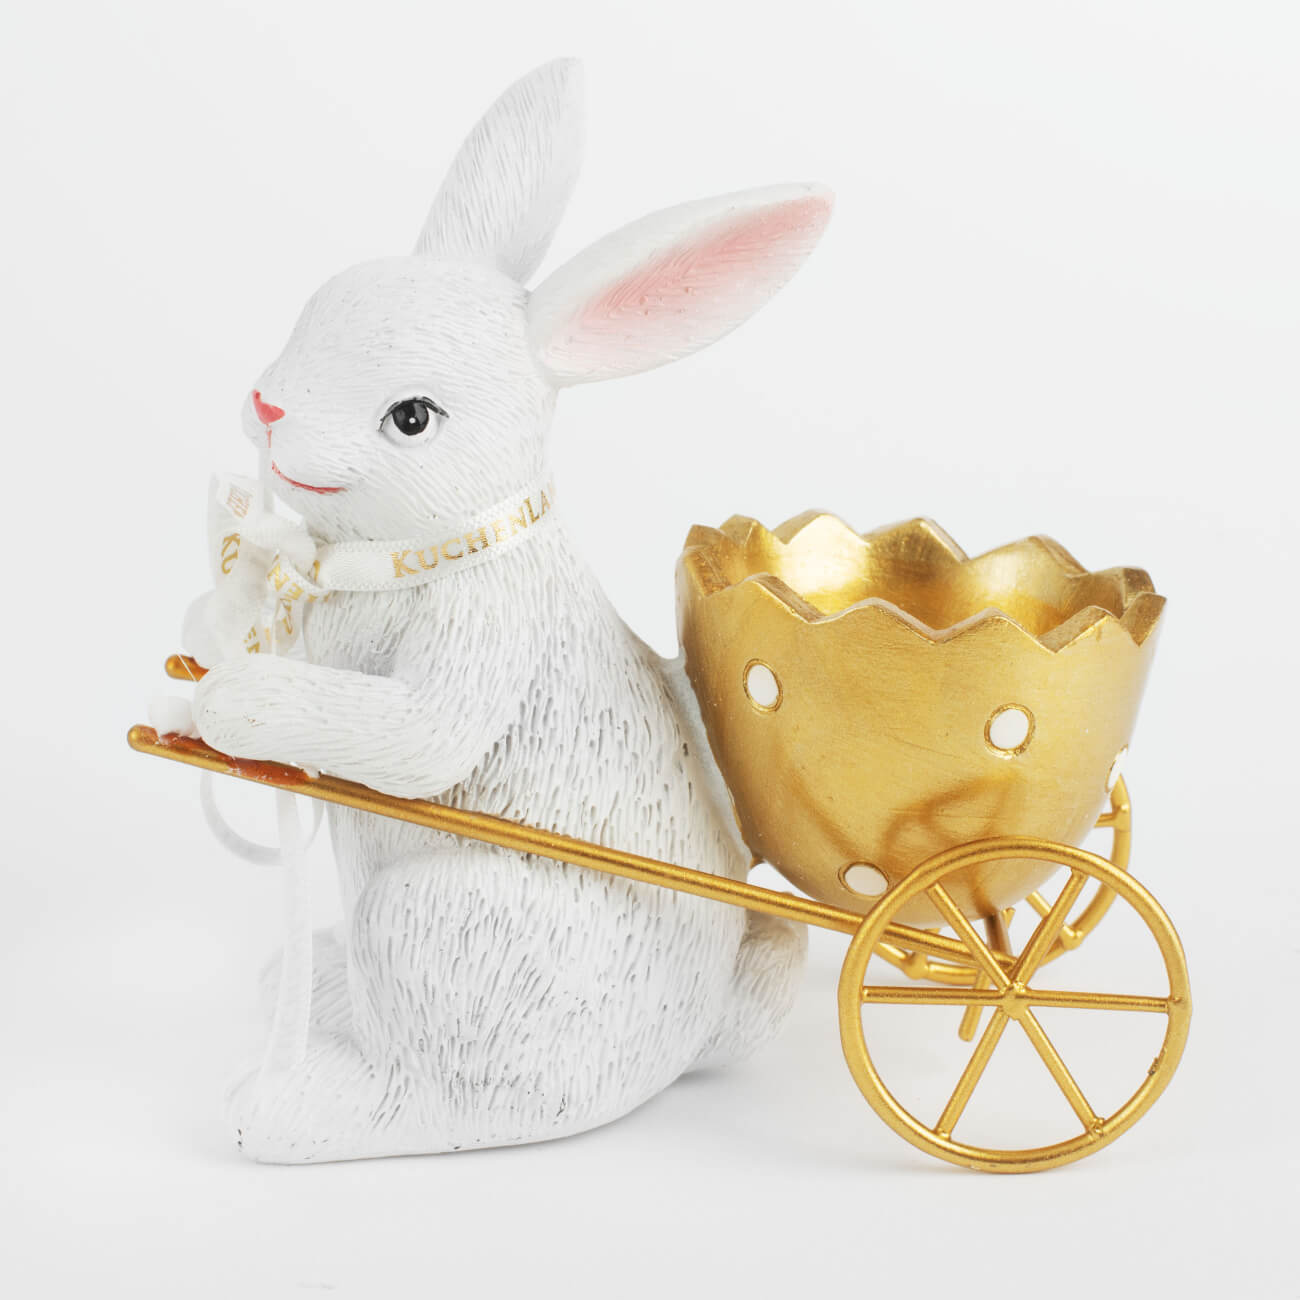 Подставка для яйца, 12 см, полирезин, бело-золотистая, Кролик с тележкой, Easter gold подставка для яйца 7 см фарфор n белая кролик в ах pure easter